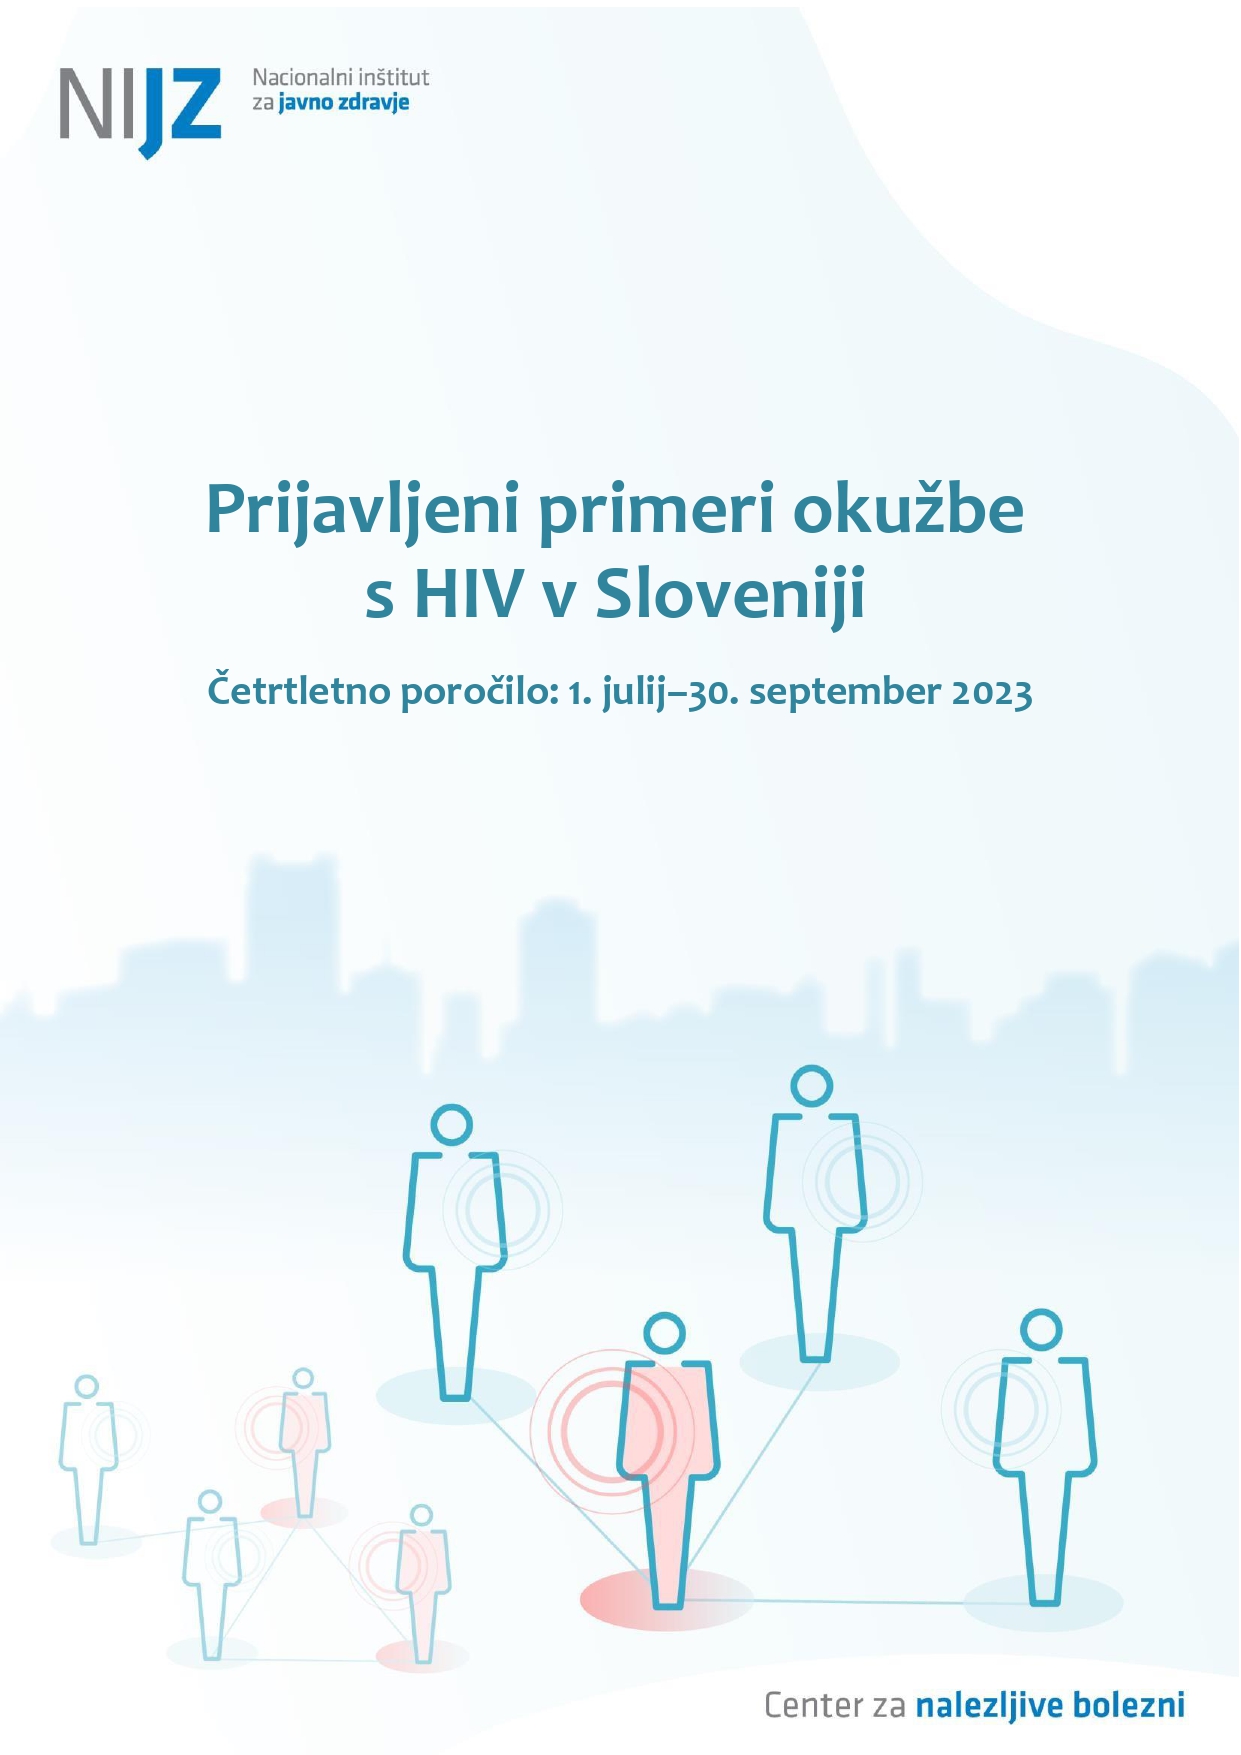 Prijavljeni primeri okužbe s HIV v Sloveniji, četrtletno poročilo, 1. julij–30. september 2023